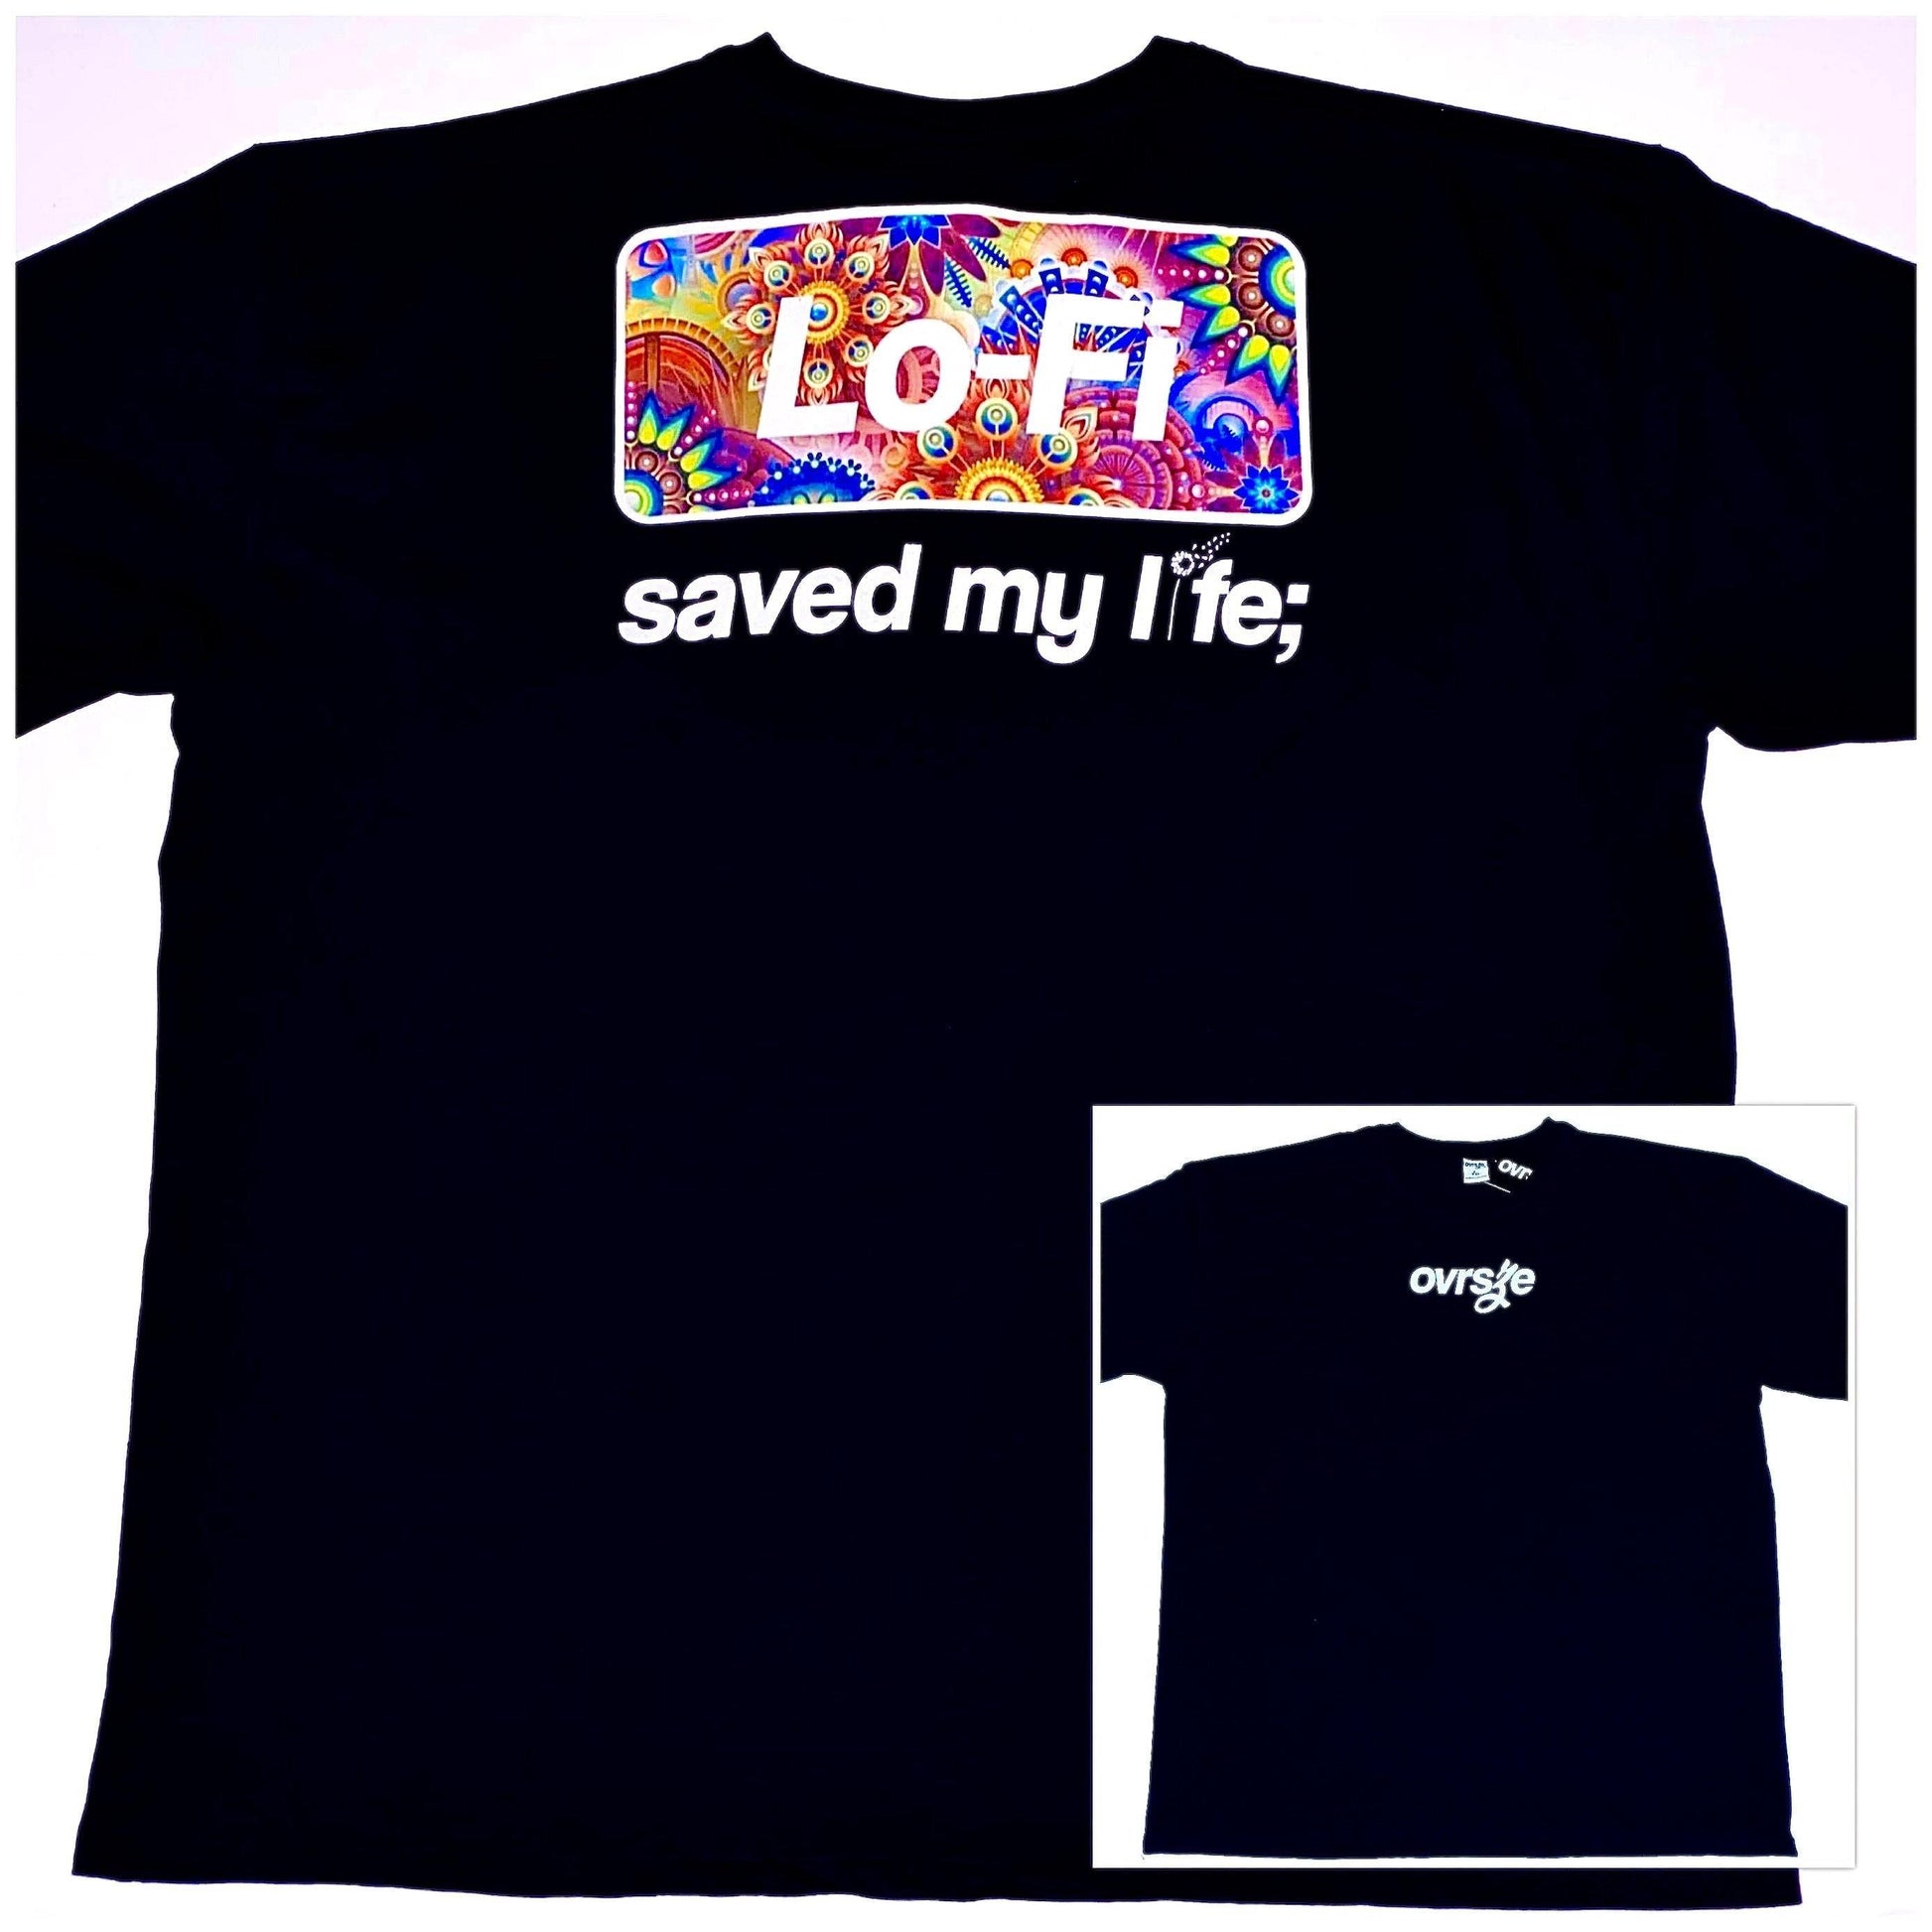 lo-fi saved my life; [t-shirt] - ovrsze